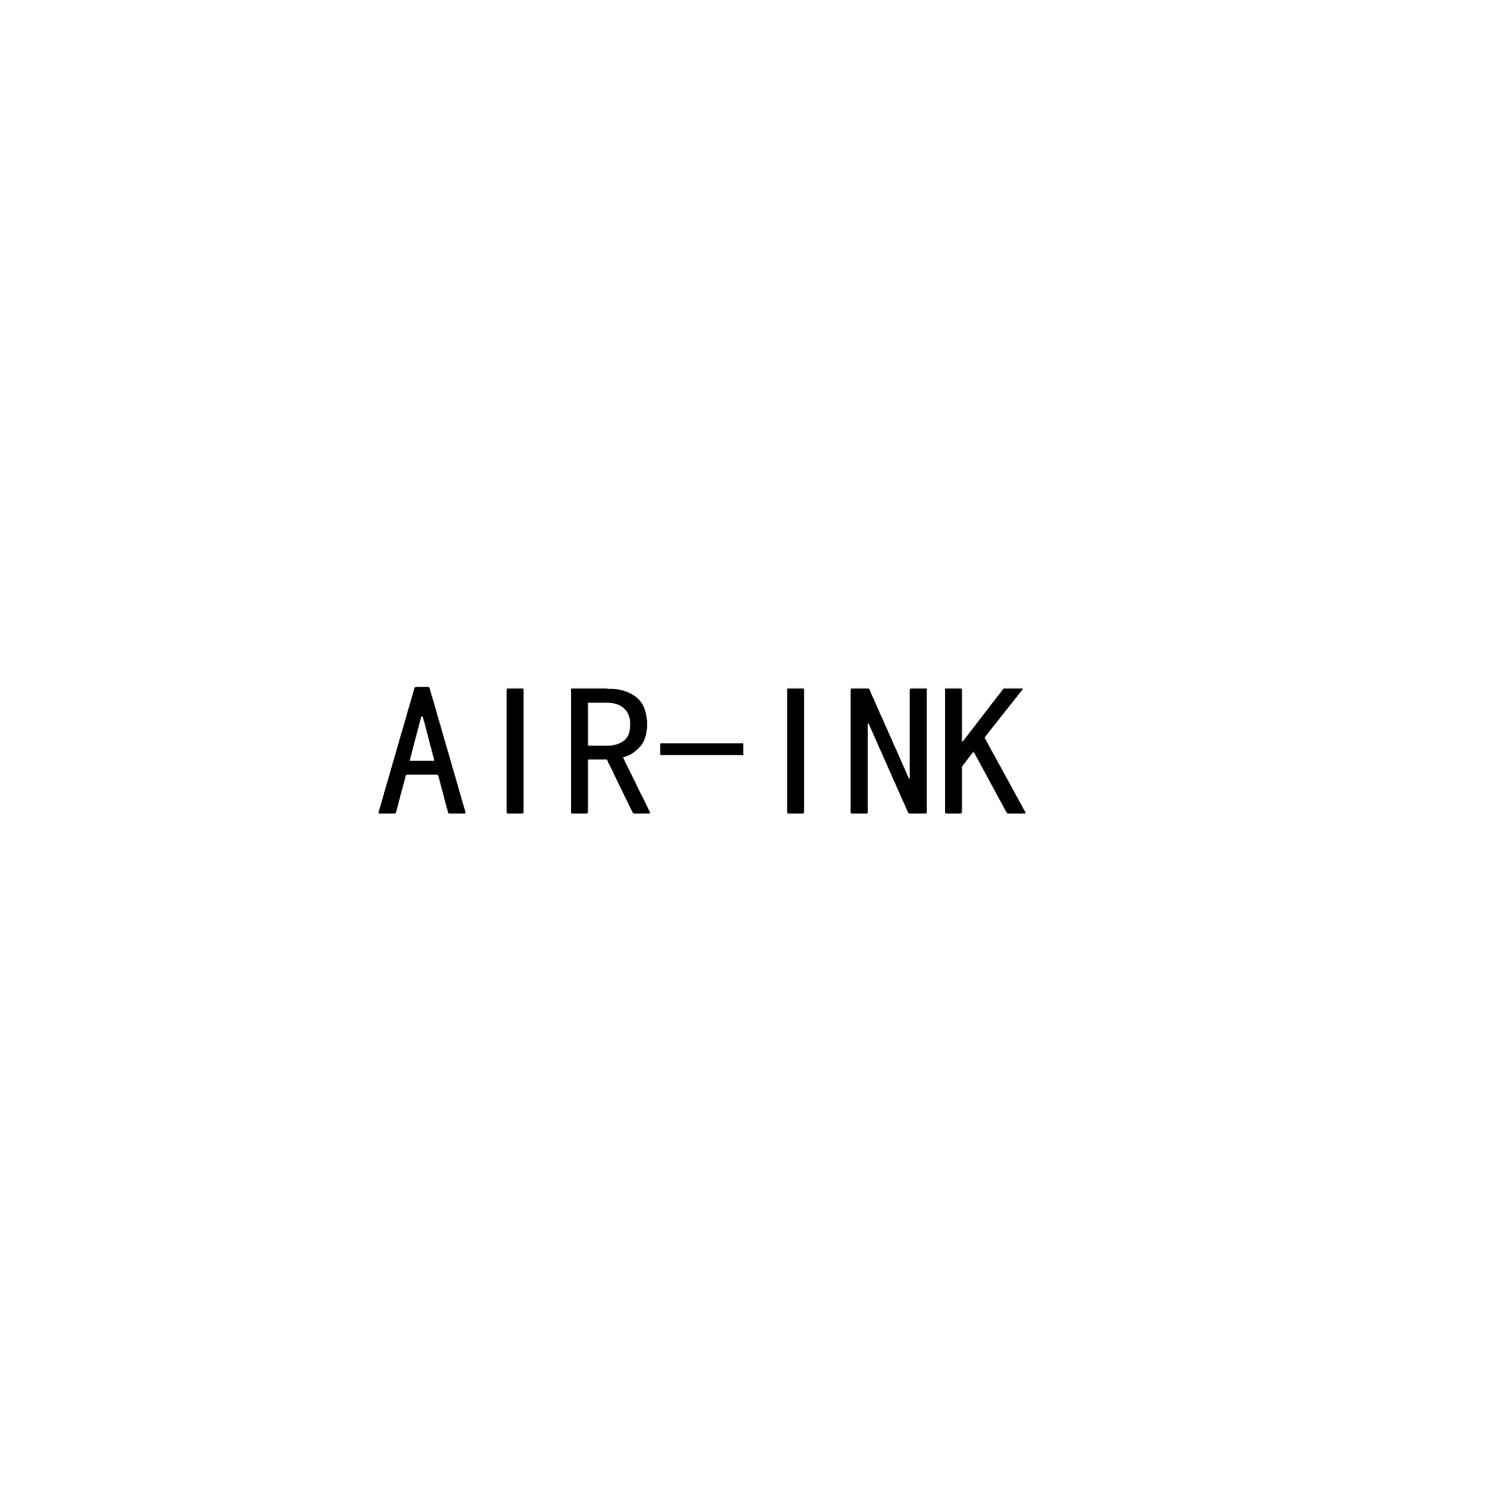 AIR-INK